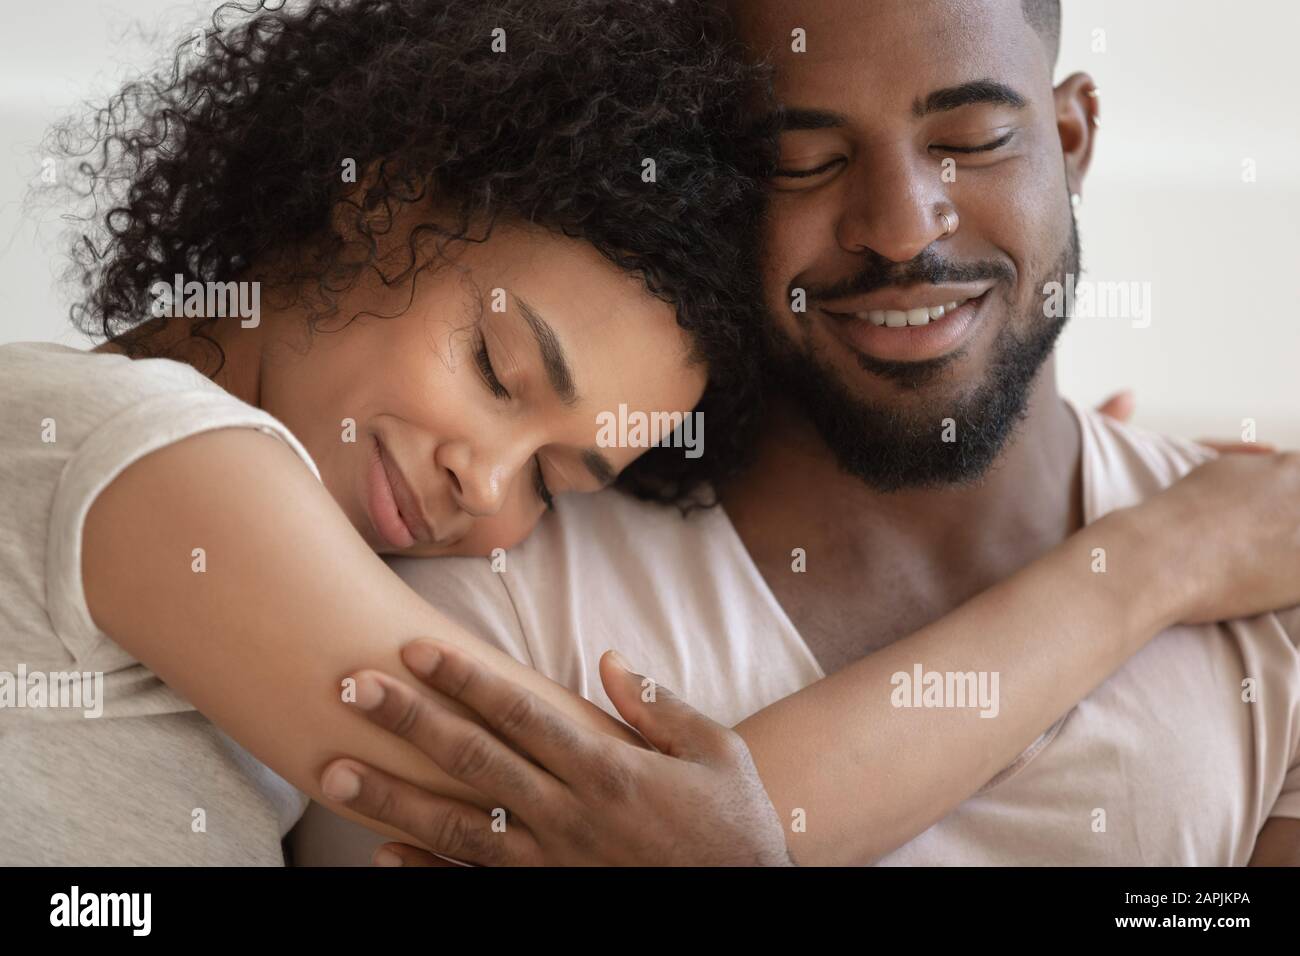 Un couple africain qui embrasse les yeux fermés, profitez d'un moment tendre Banque D'Images